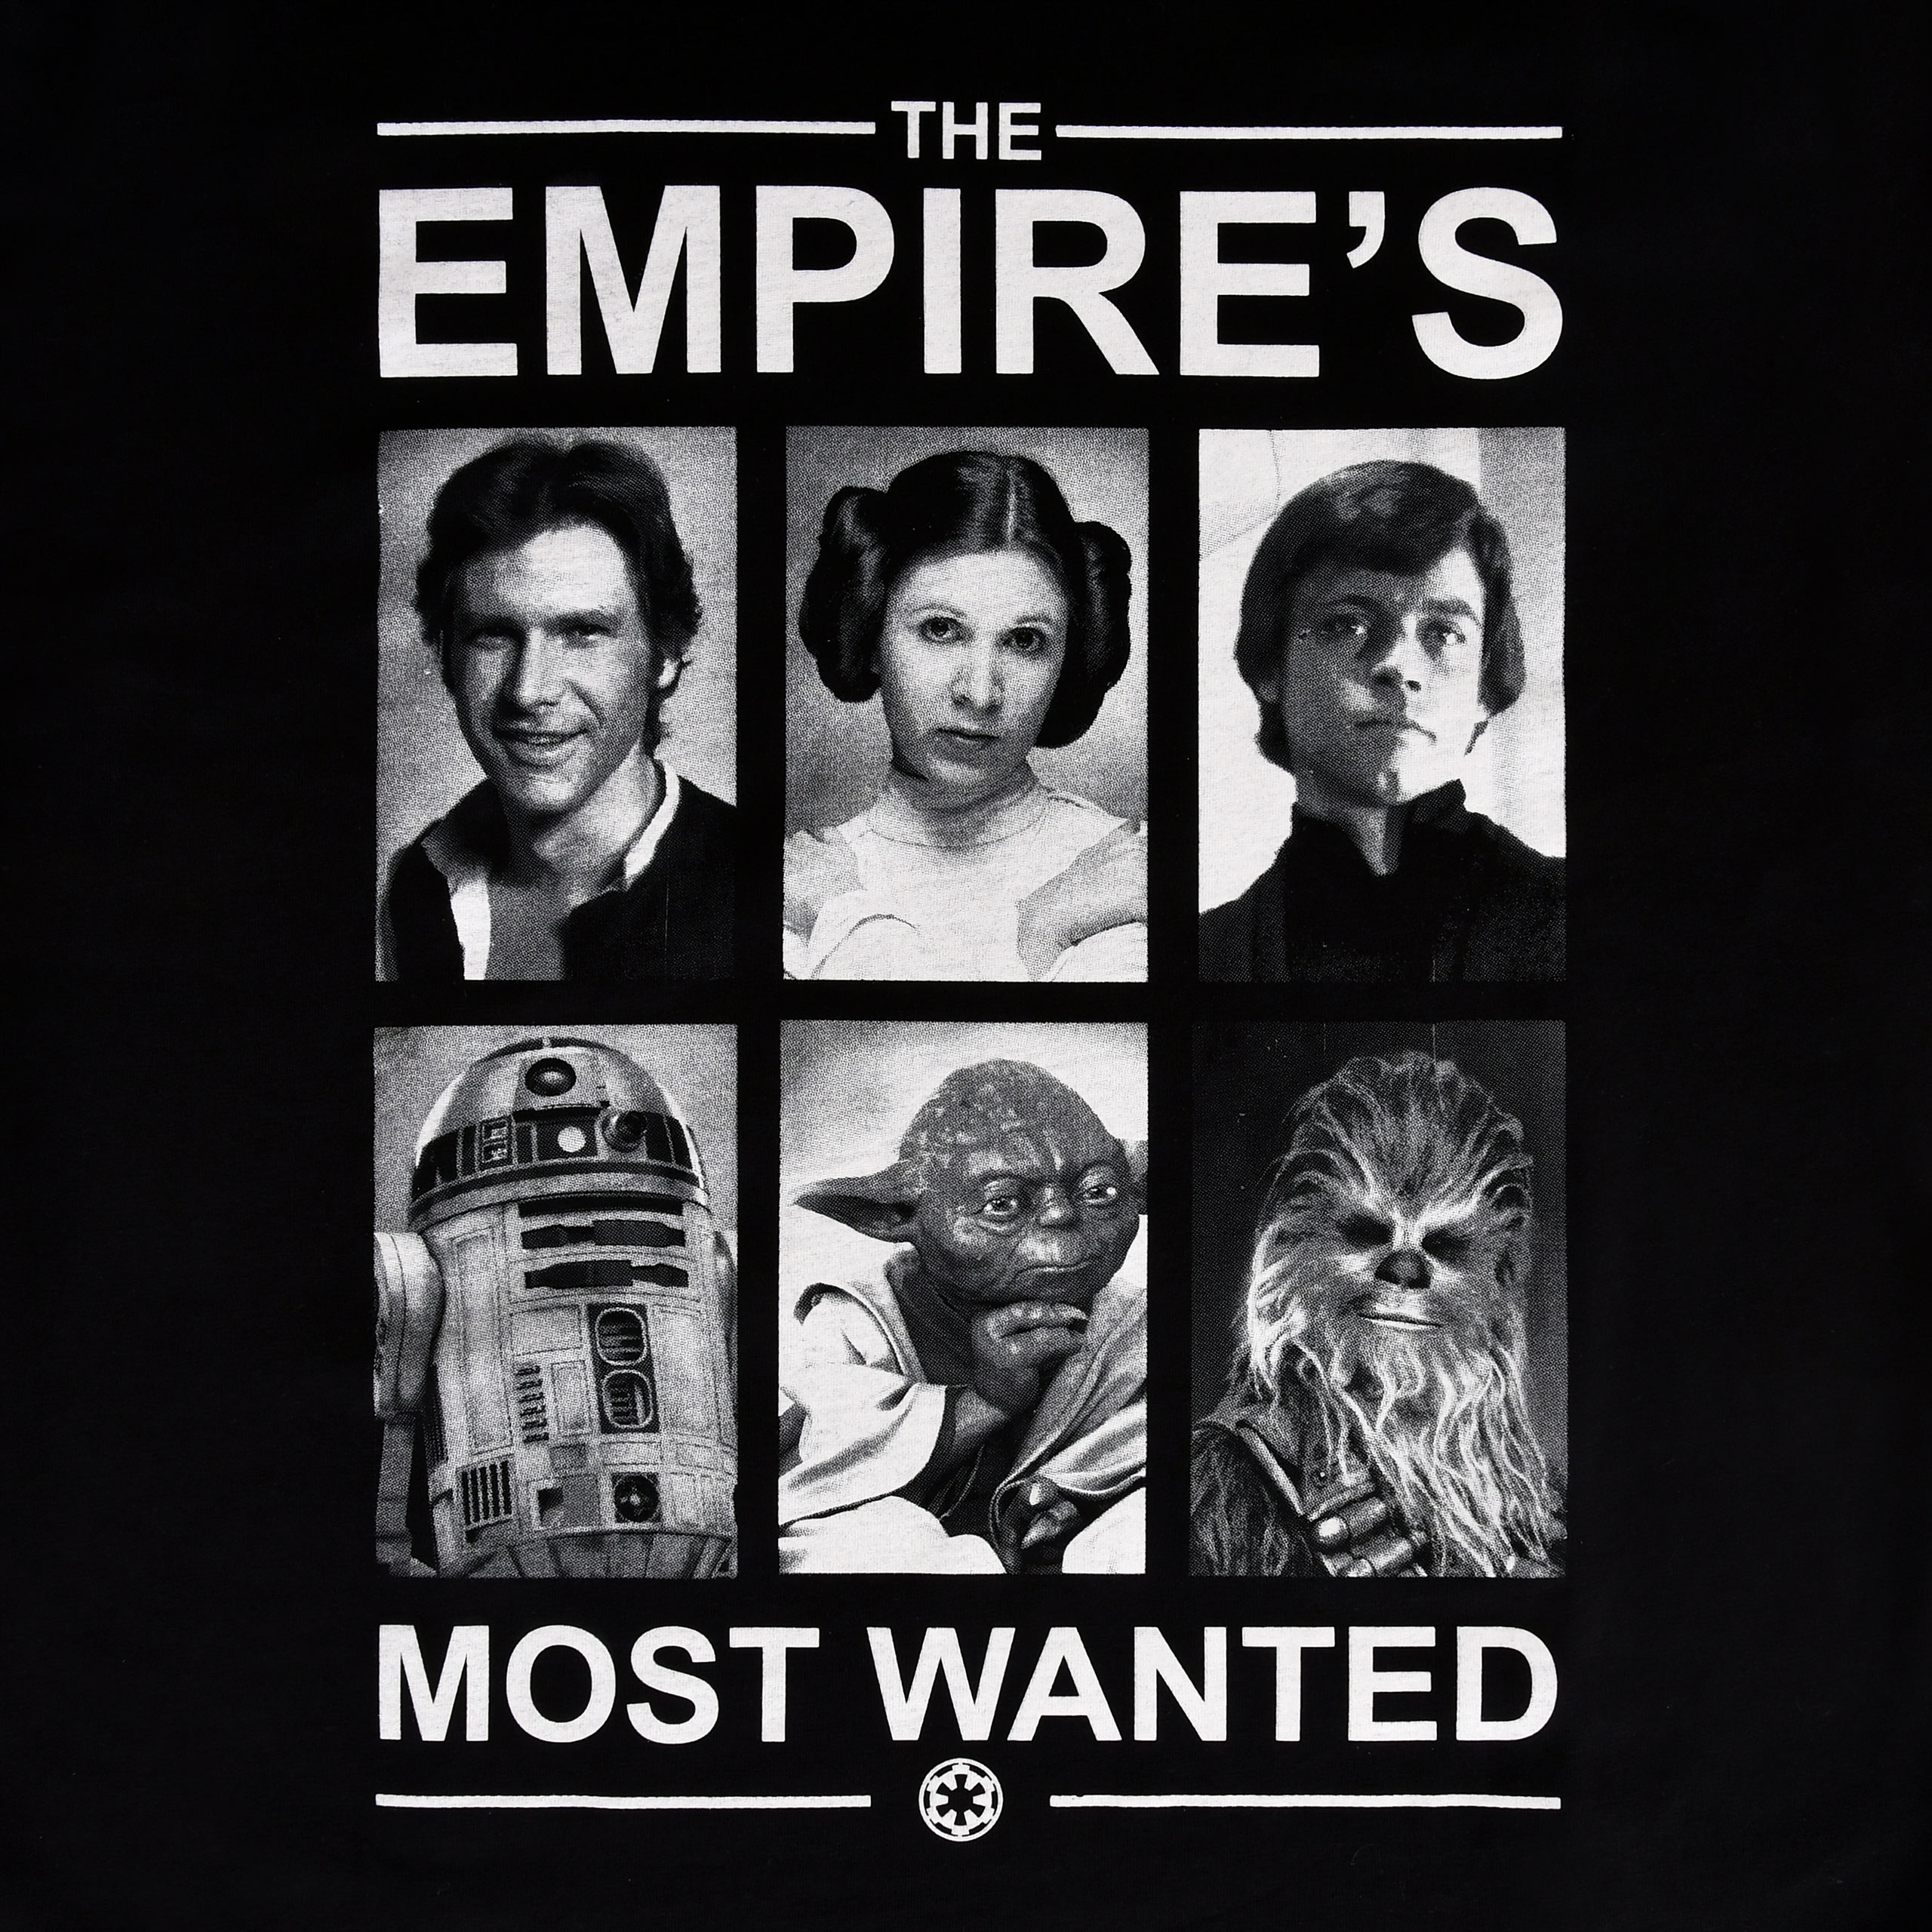 Star Wars - Empire's Most Wanted T-shirt zwart